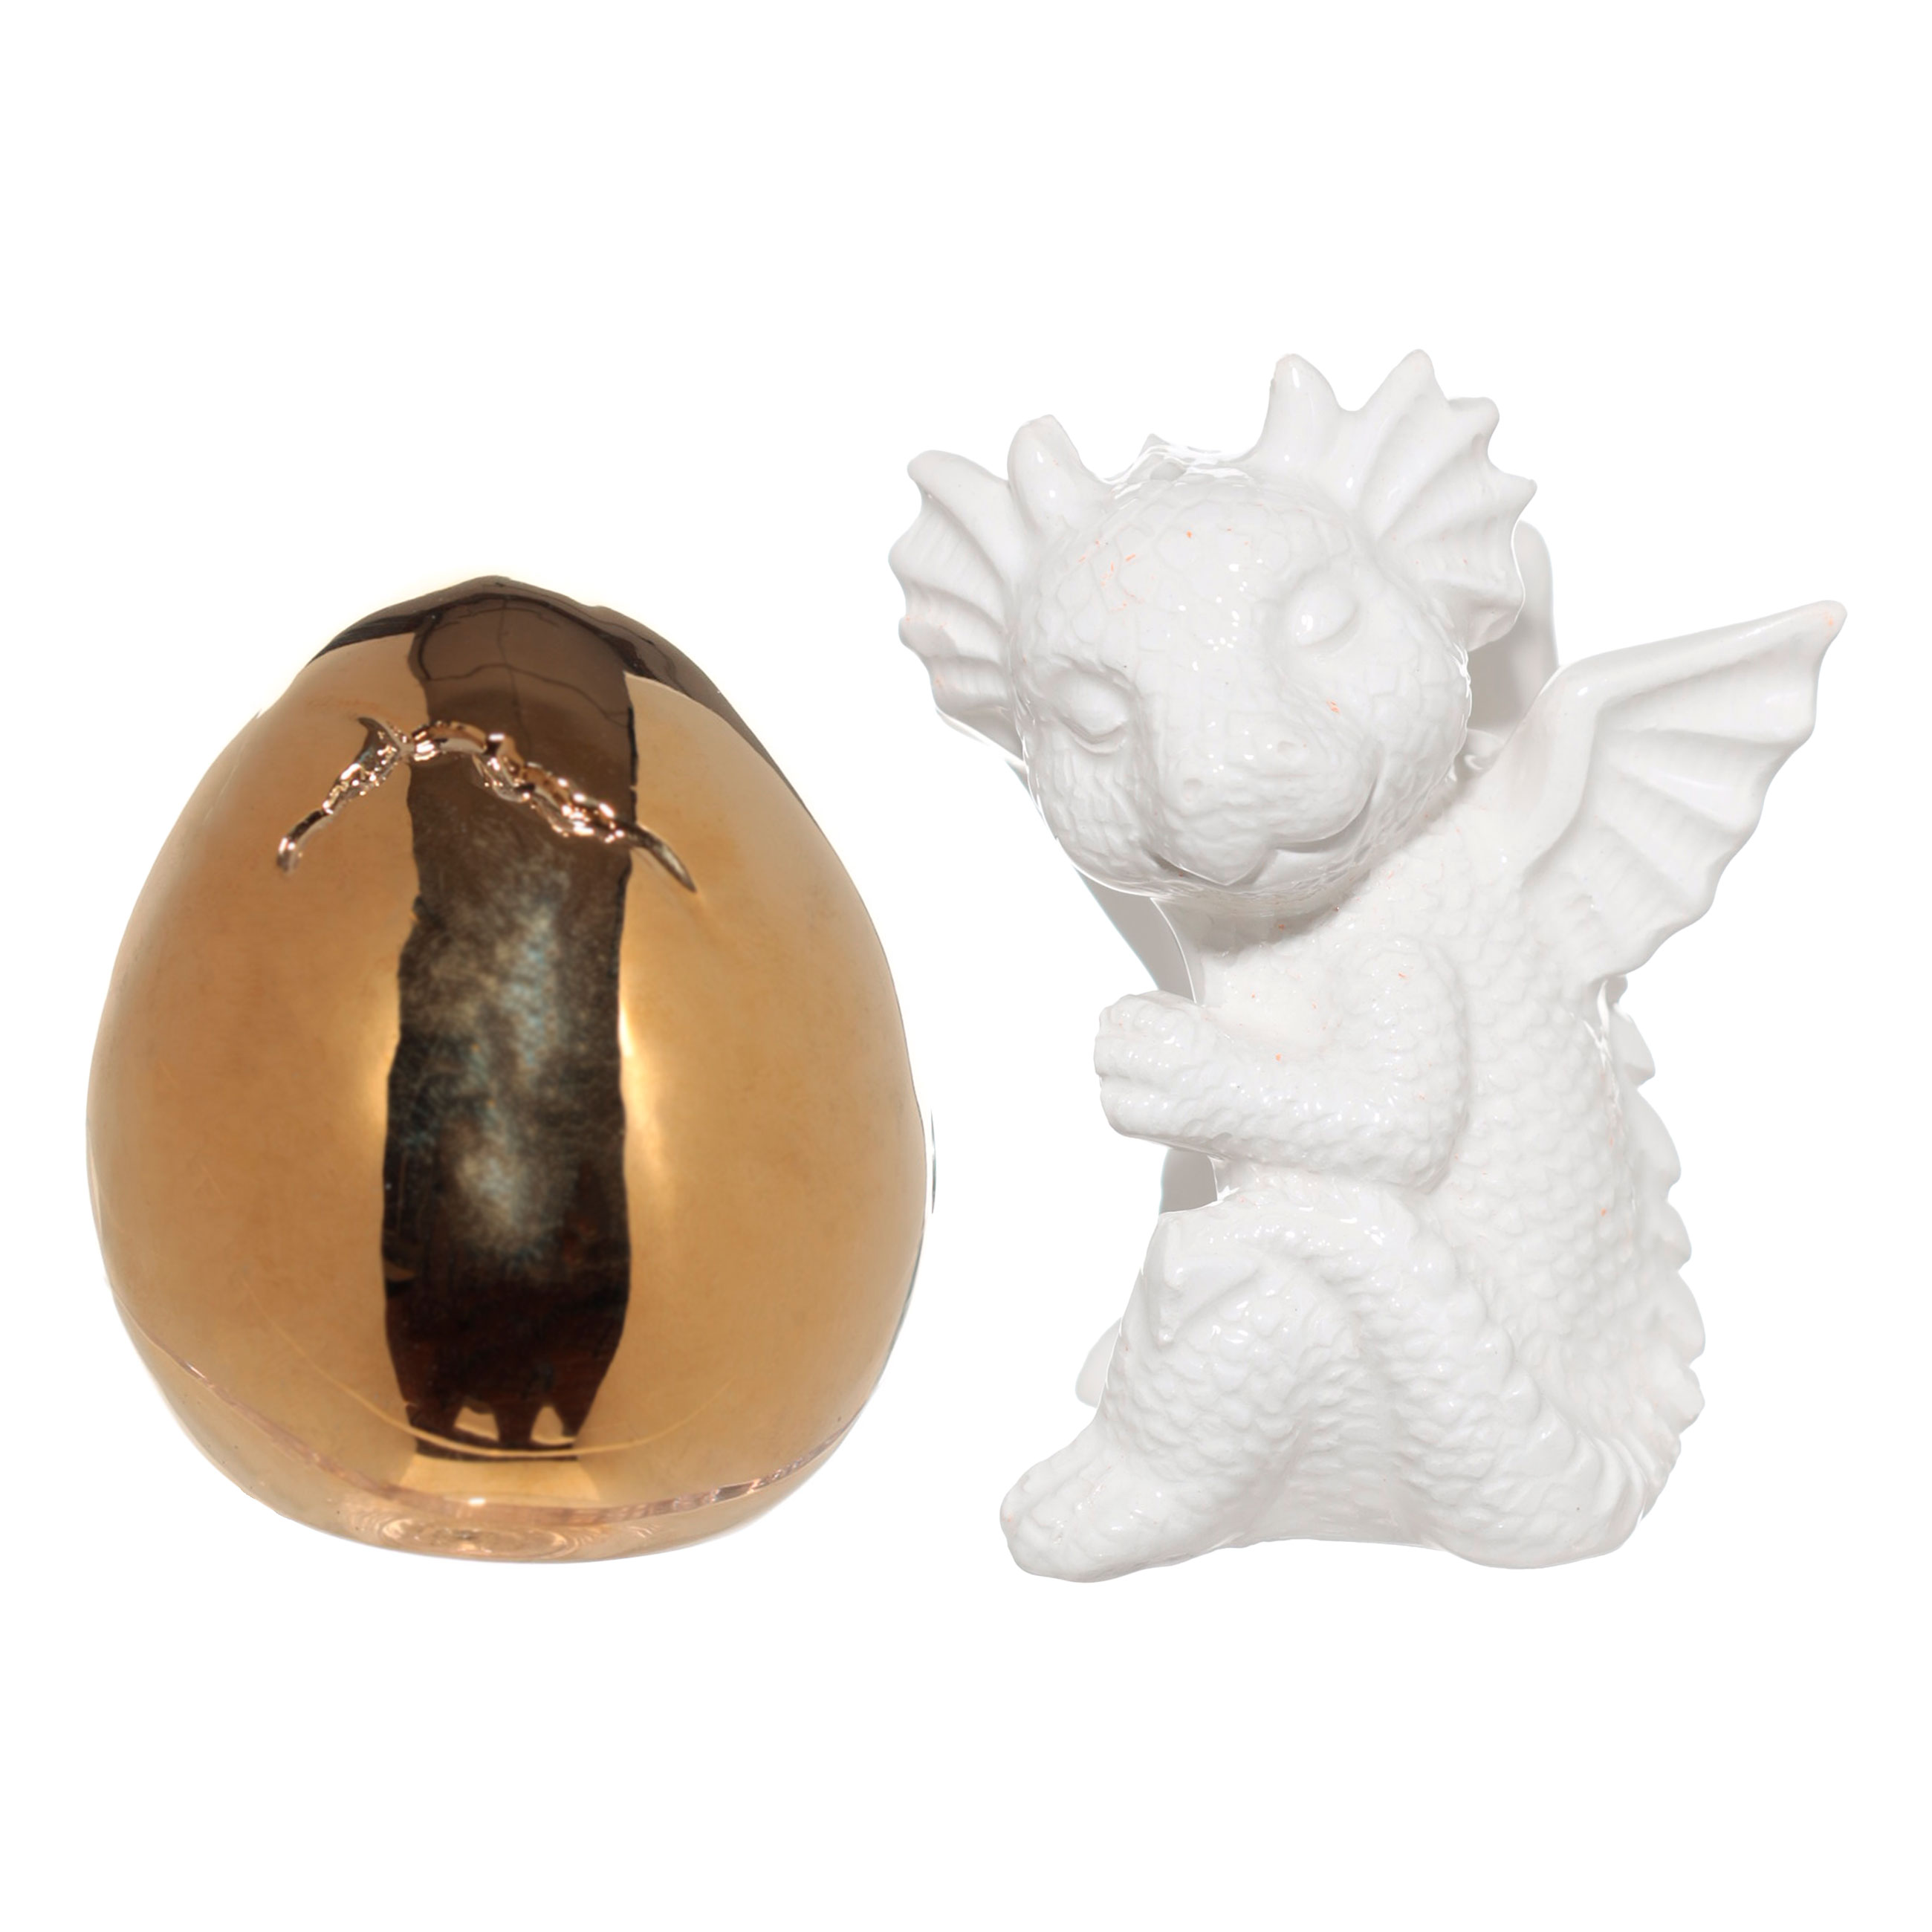 Набор для соли и перца, 9 см, с магнитом, керамика, золотистый/белый, Дракон и яйцо, Dragon cute изображение № 5